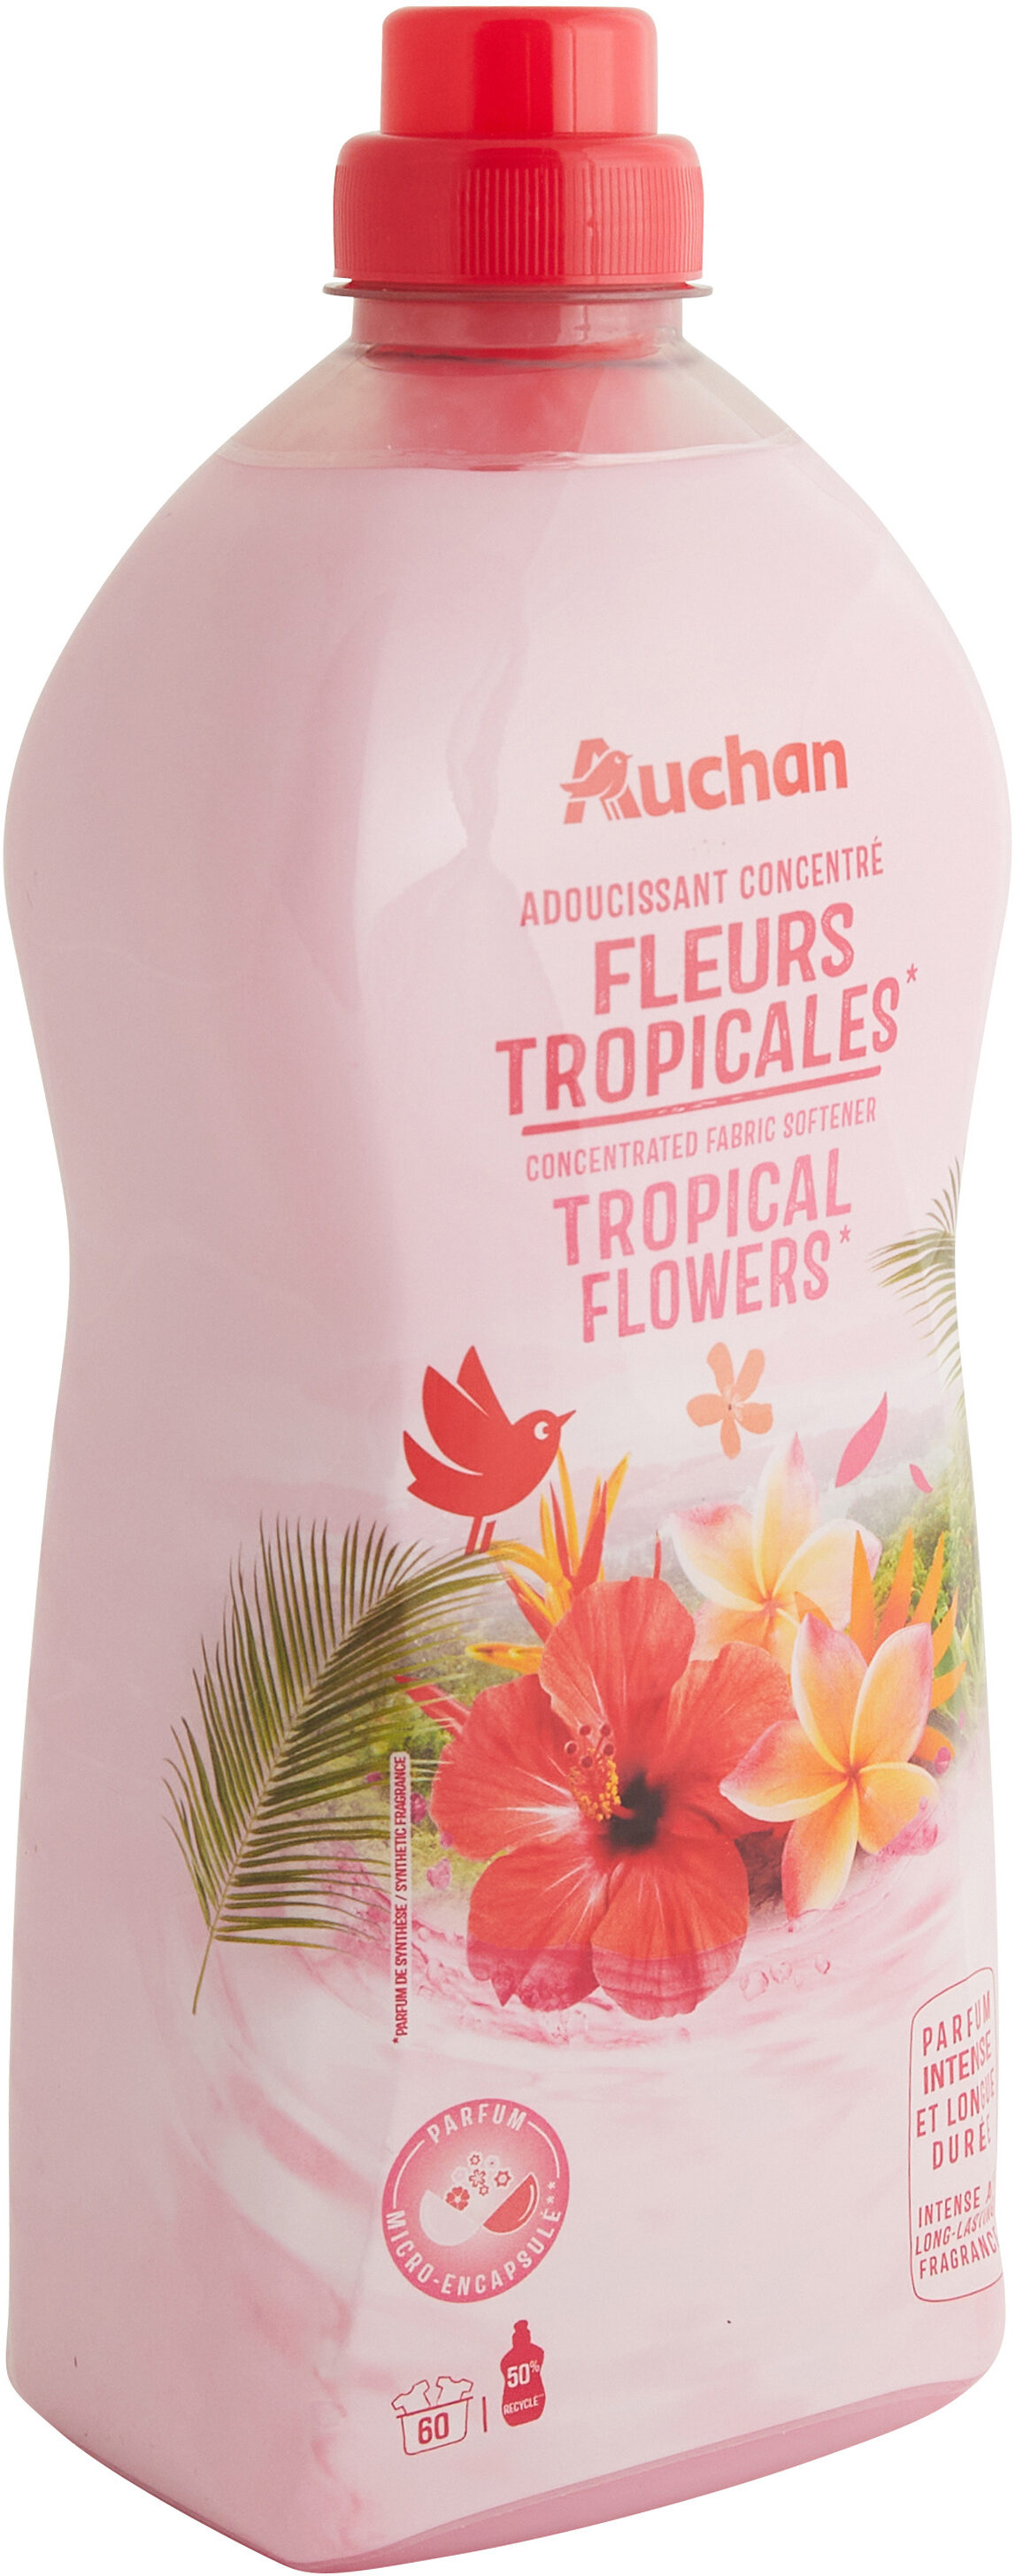 Adoucissant concentré fleurs tropicales - Produit - fr